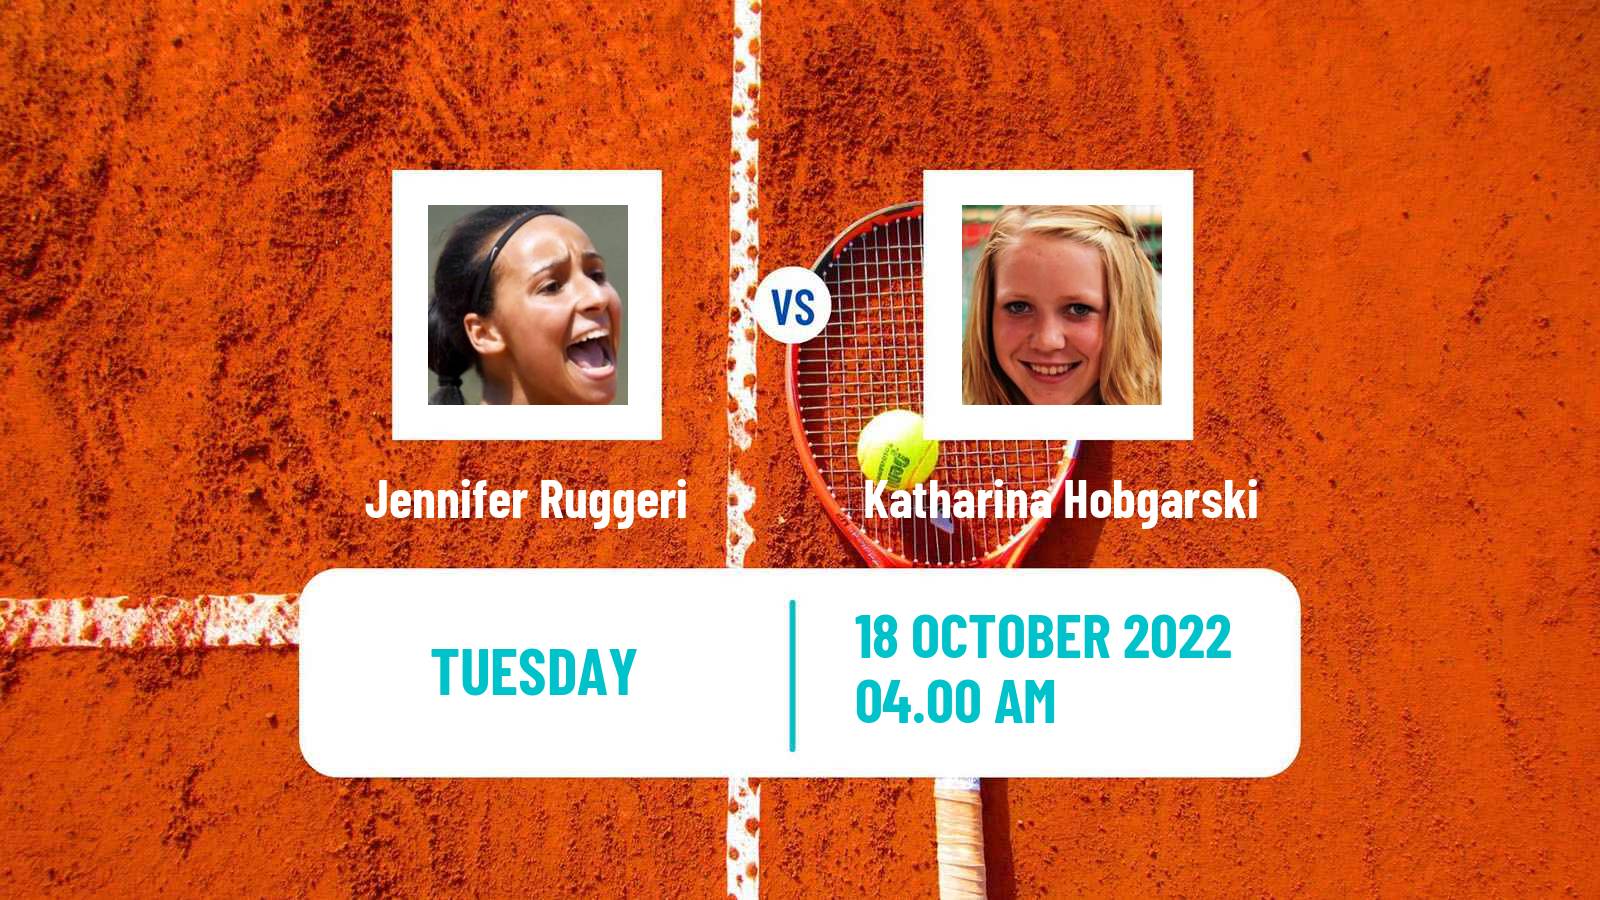 Tennis ITF Tournaments Jennifer Ruggeri - Katharina Hobgarski